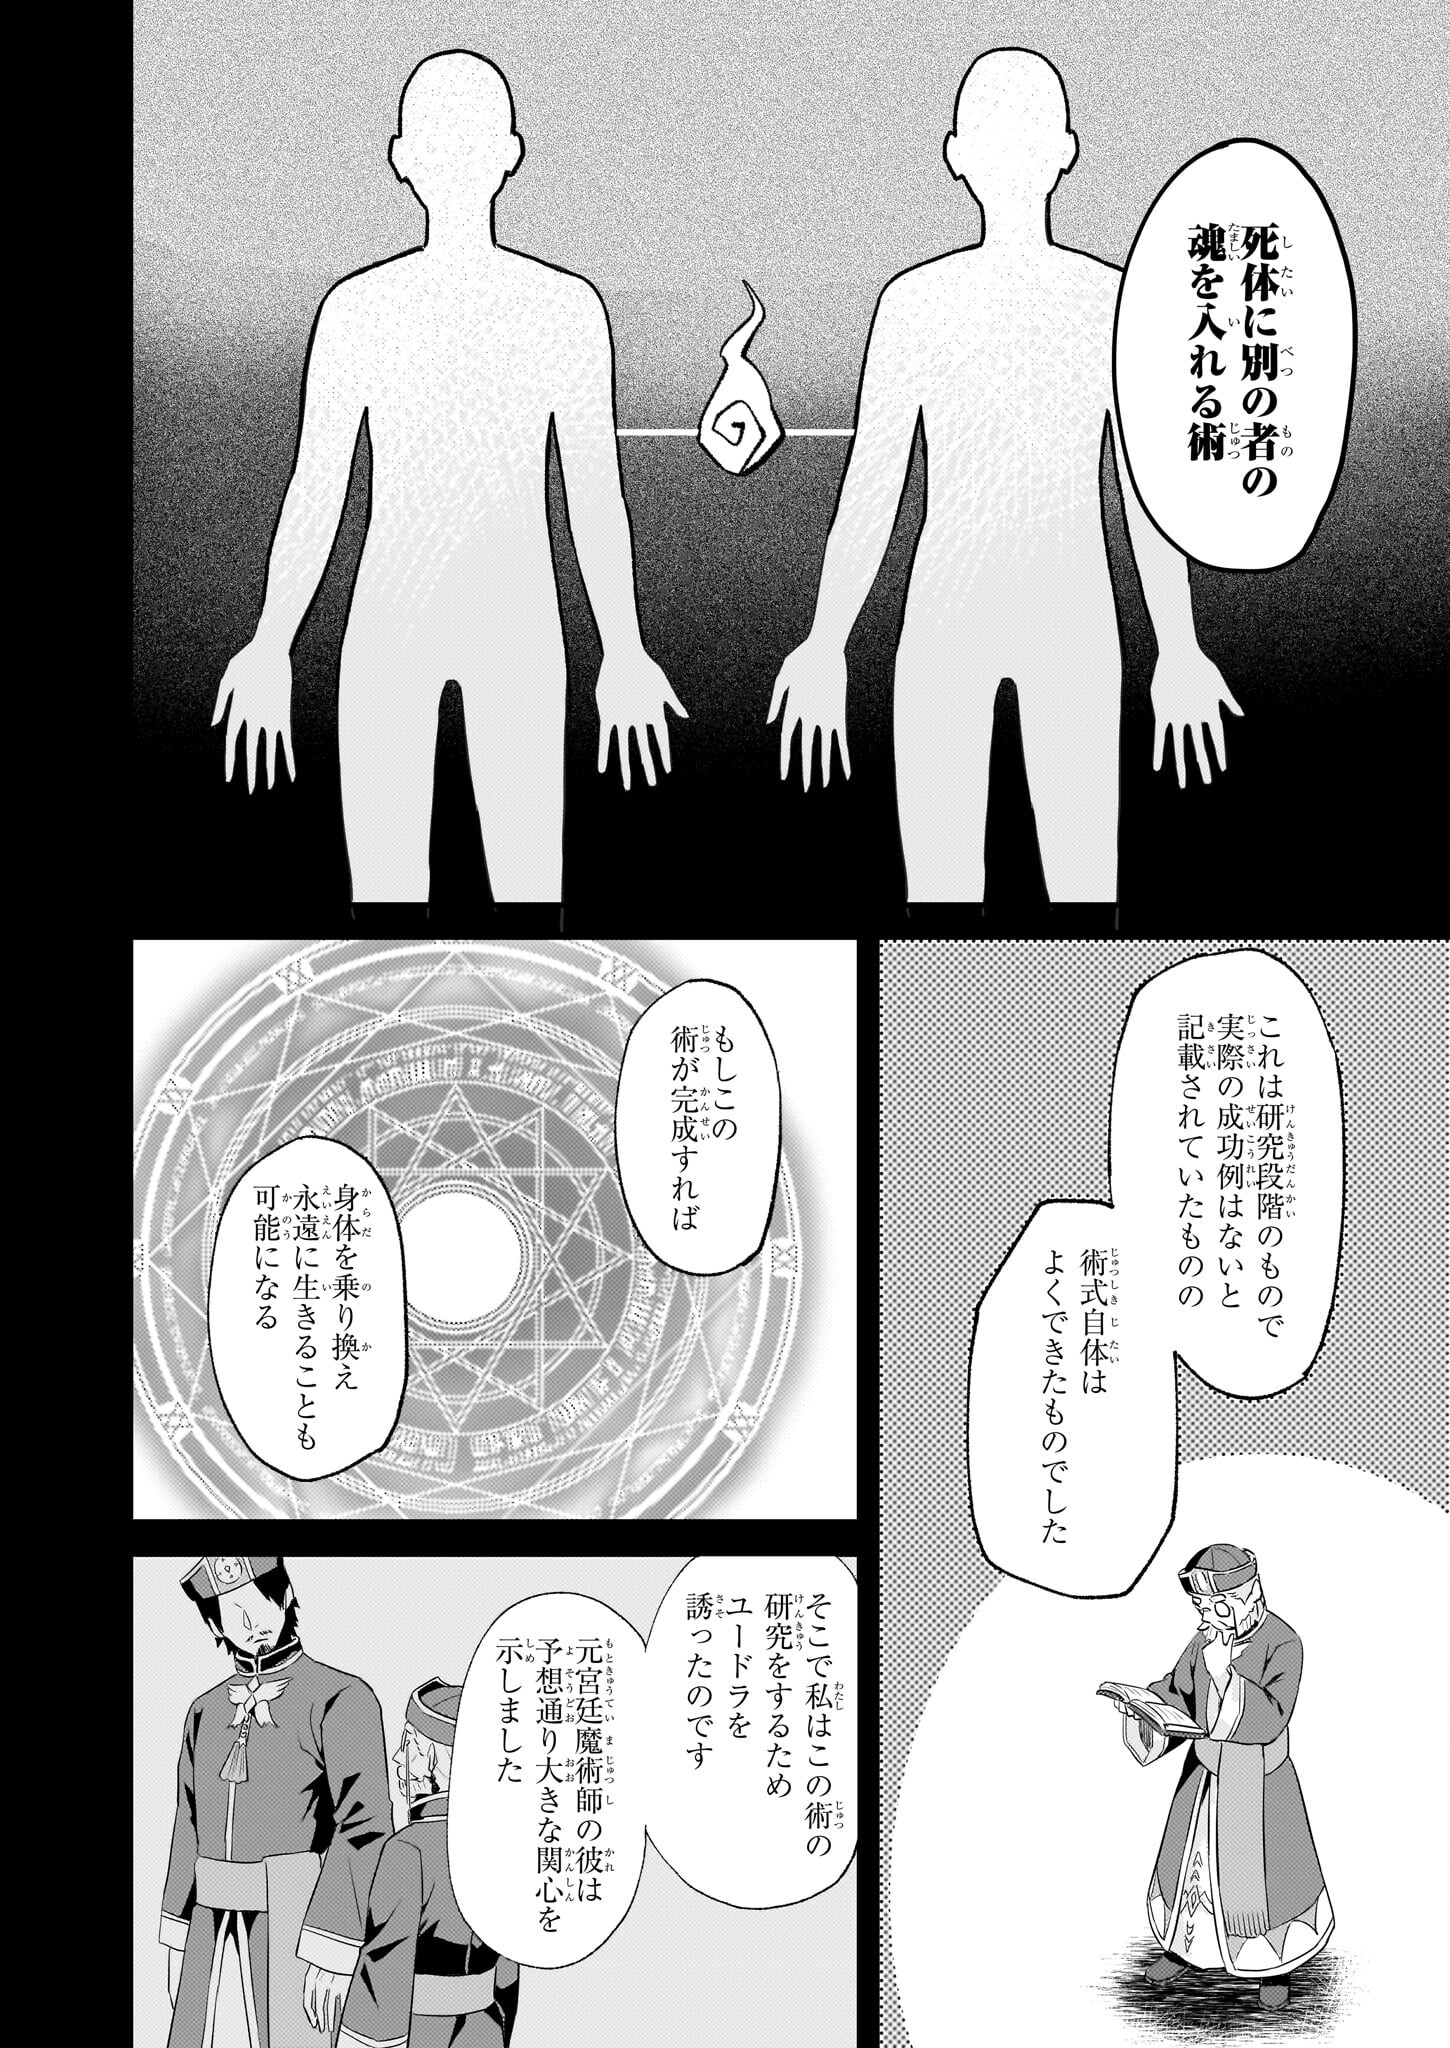 Imouto ni Fiancee wo Zuzure to Iwaremashita Saikyou no ryuu ni Kiniirarete Masaka no Oukoku Nottori? - Chapter 46 - Page 2